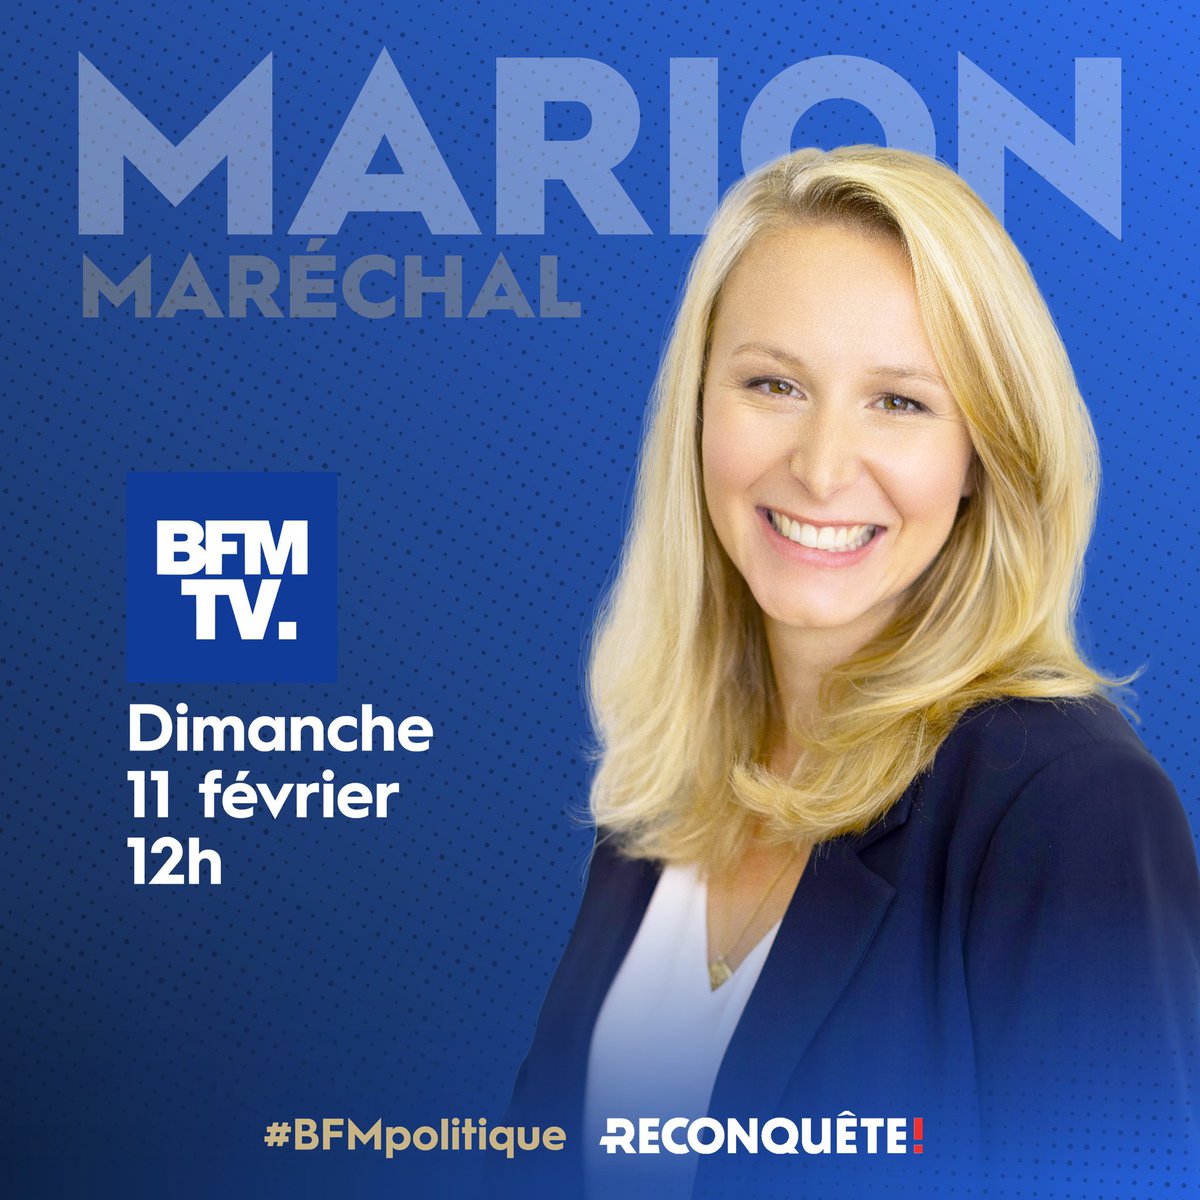 Marion Maréchal est juste excellente face à un Benjamin Duhamel qui ne supporte pas la pluralité des opinions. 
#BFMpolitique #AvecMarion